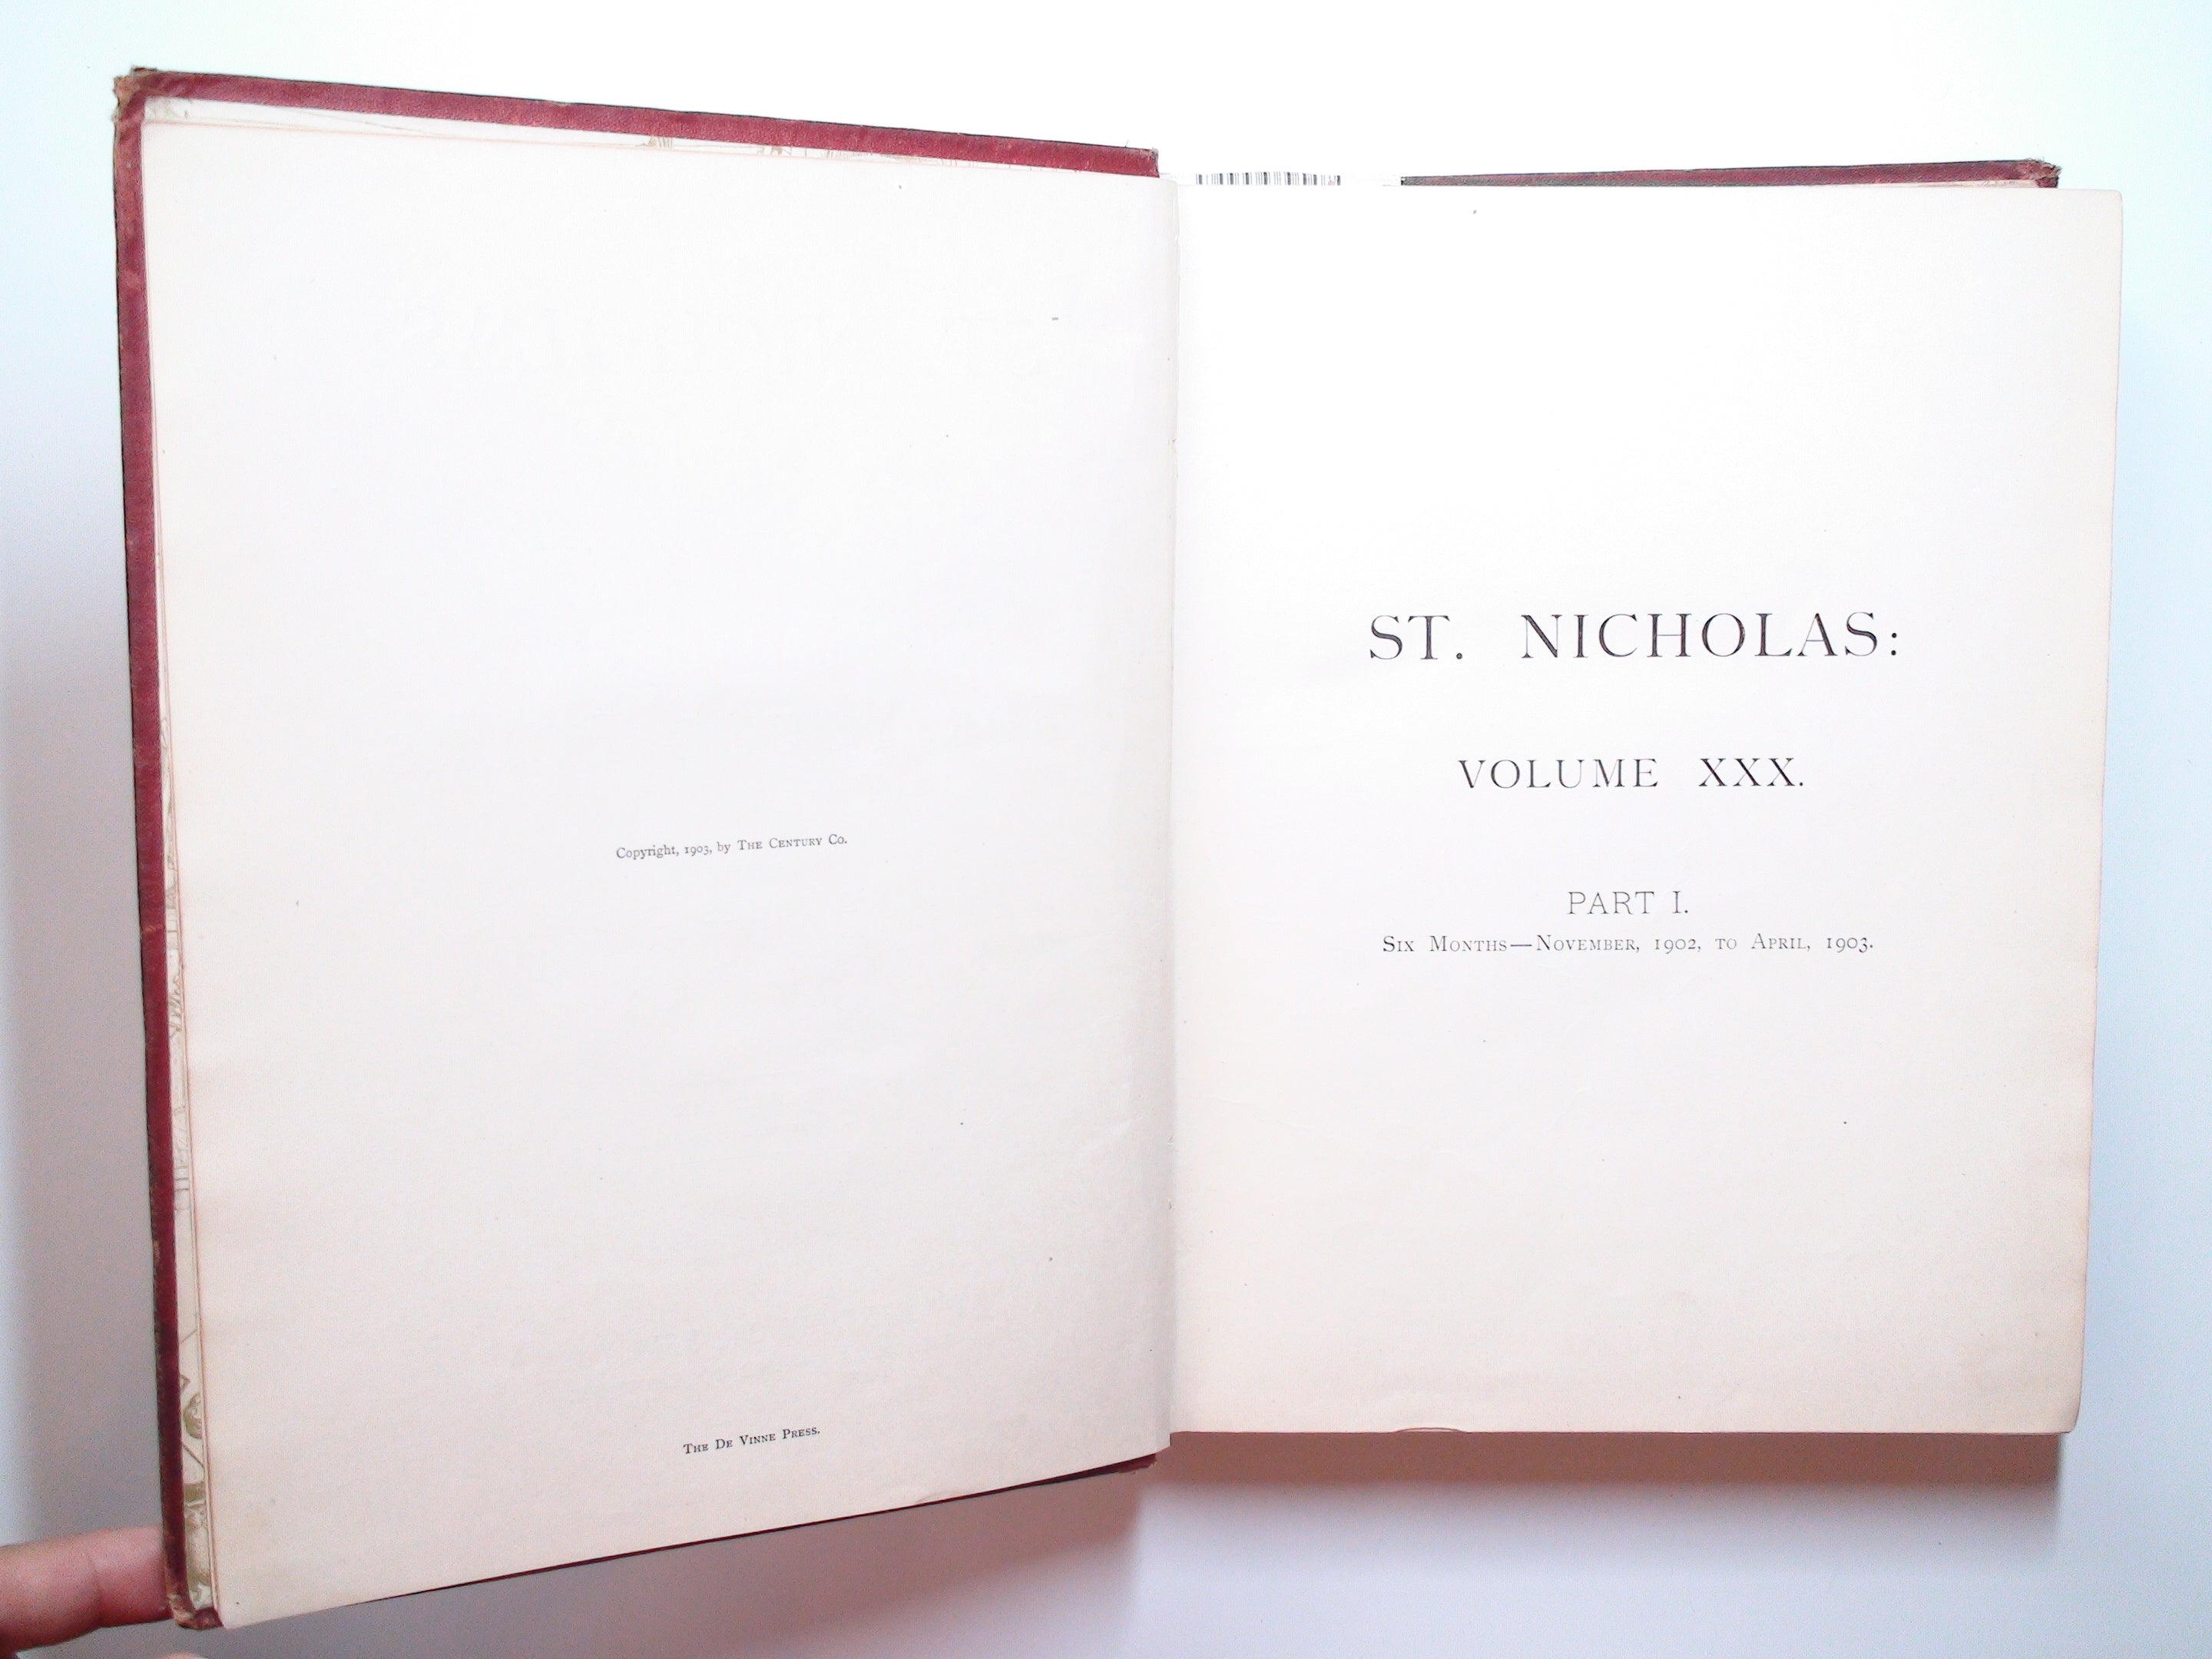 St. Nicholas Illustrated Children's Magazine, Vol XXX, Part I, 1903